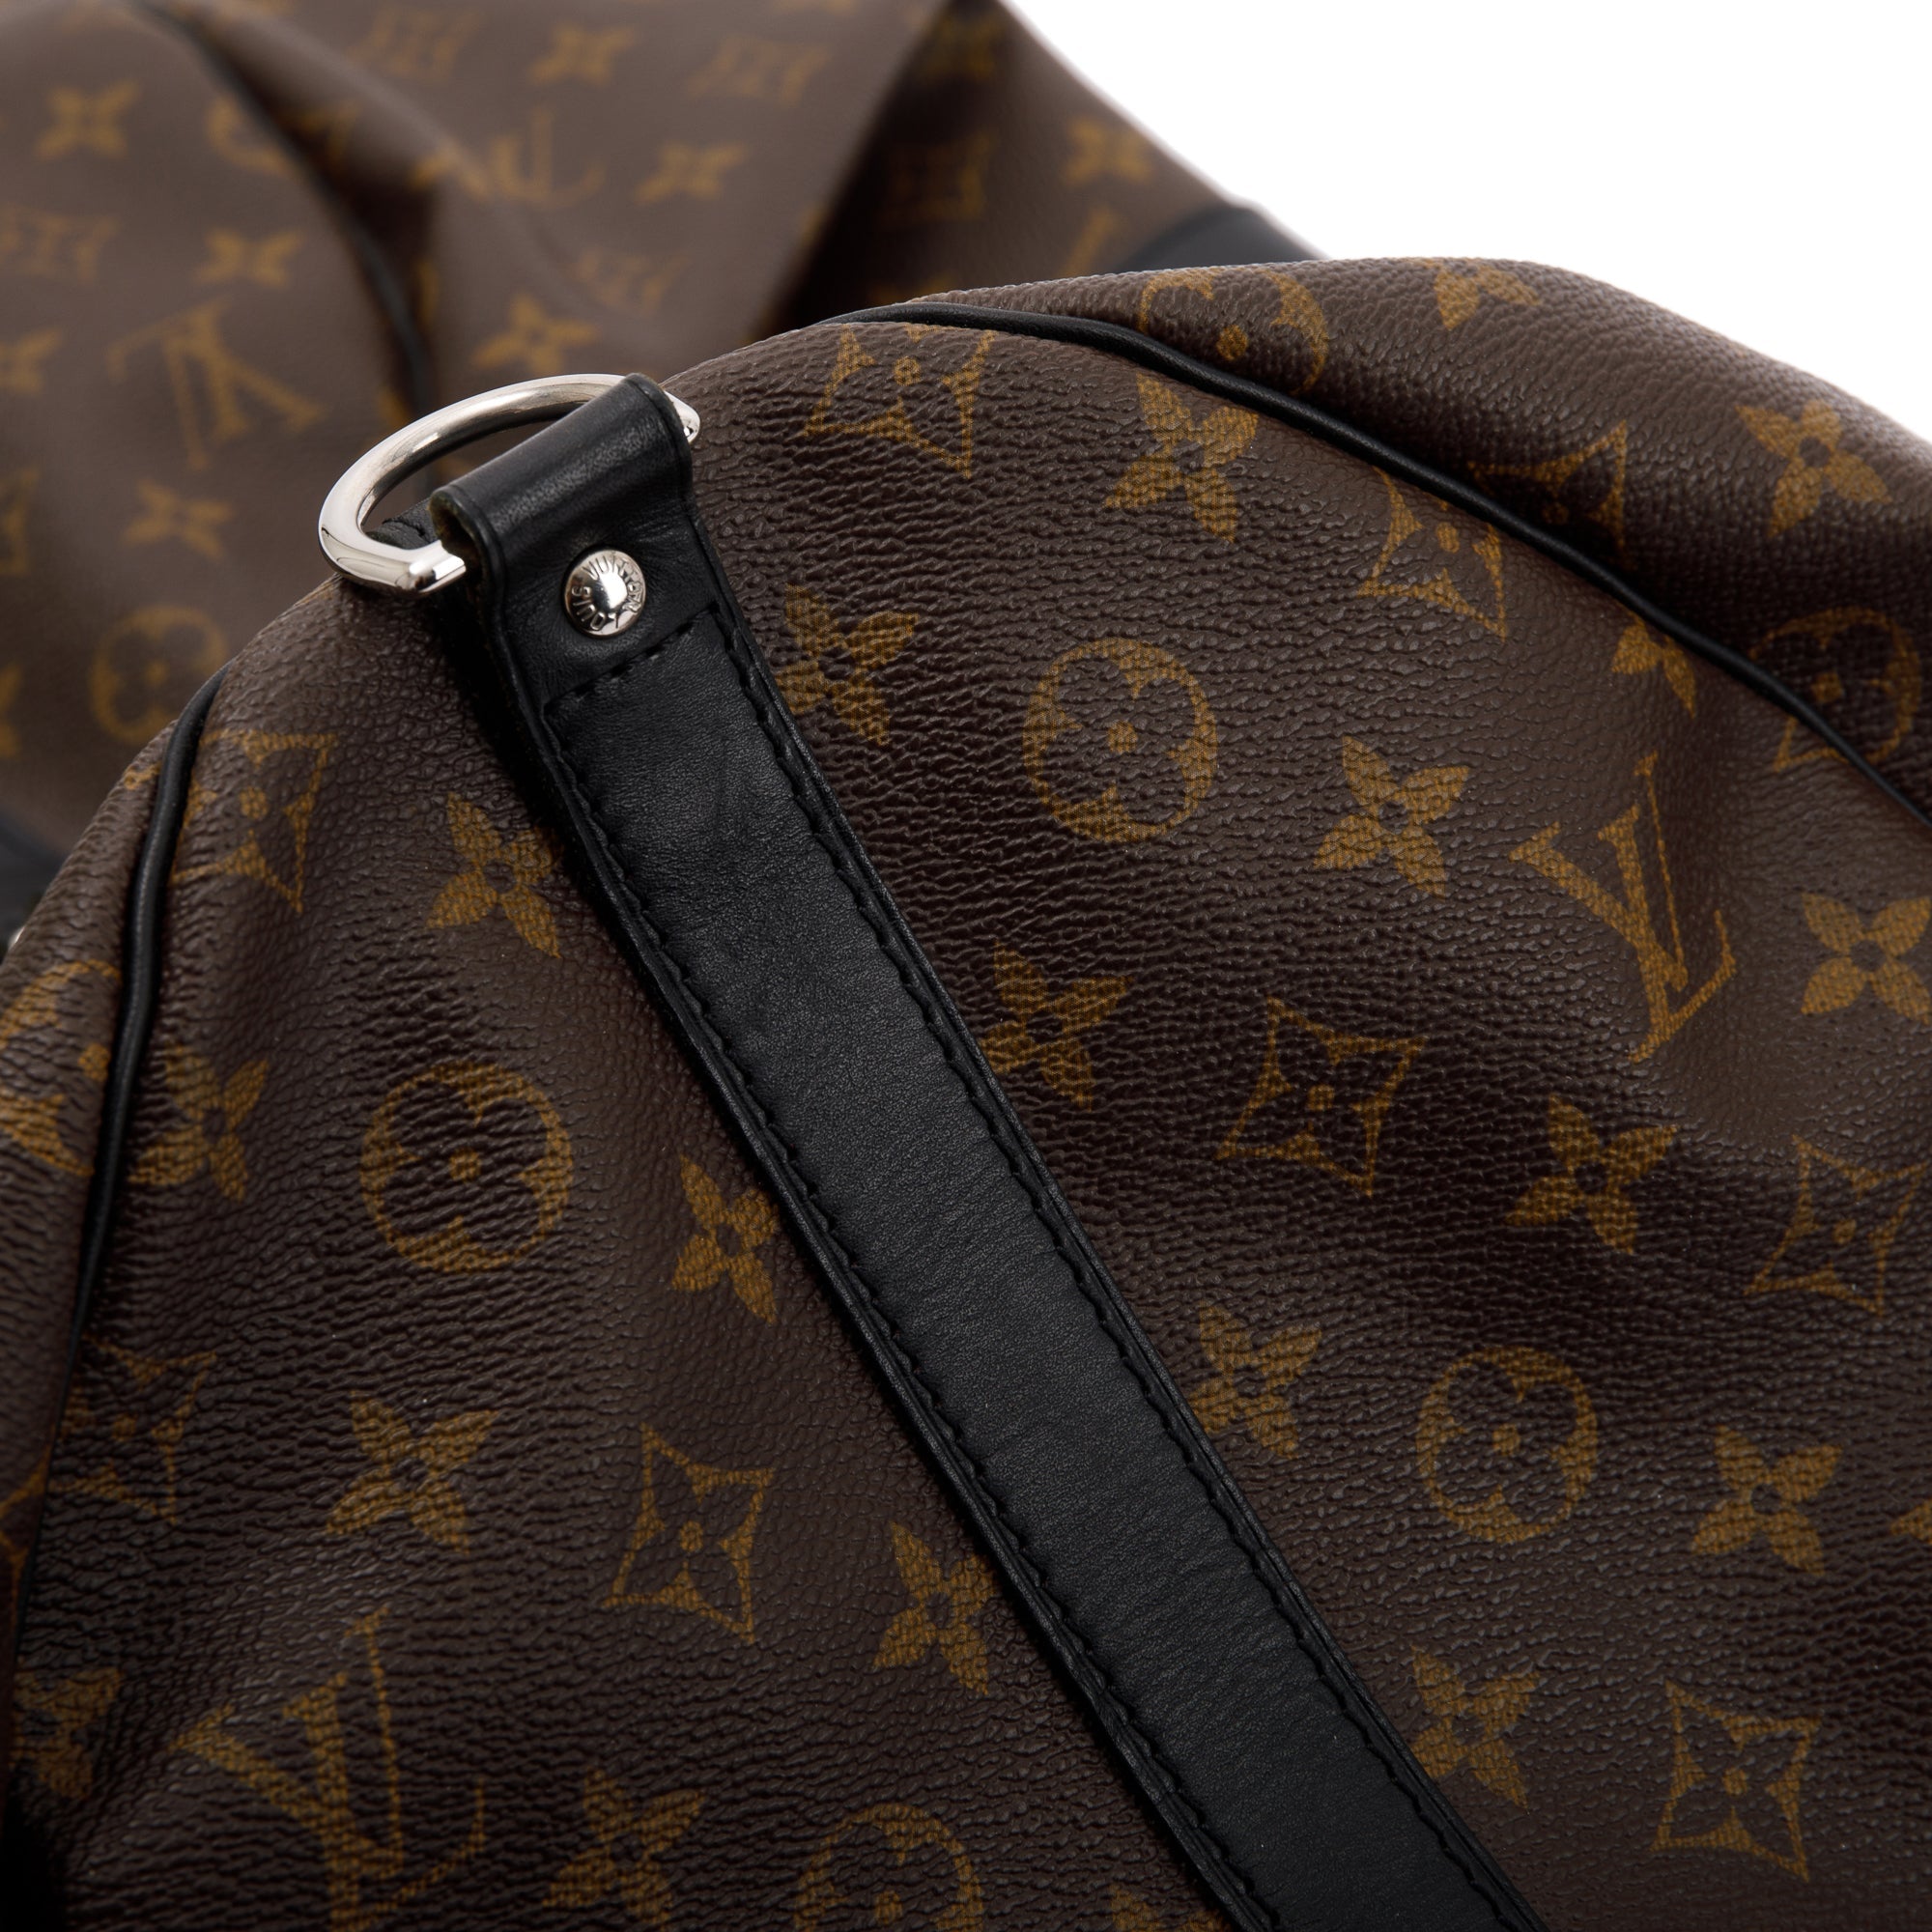 Louis Vuitton Keepall Bandouliere 55 Monogram Macassar Bag